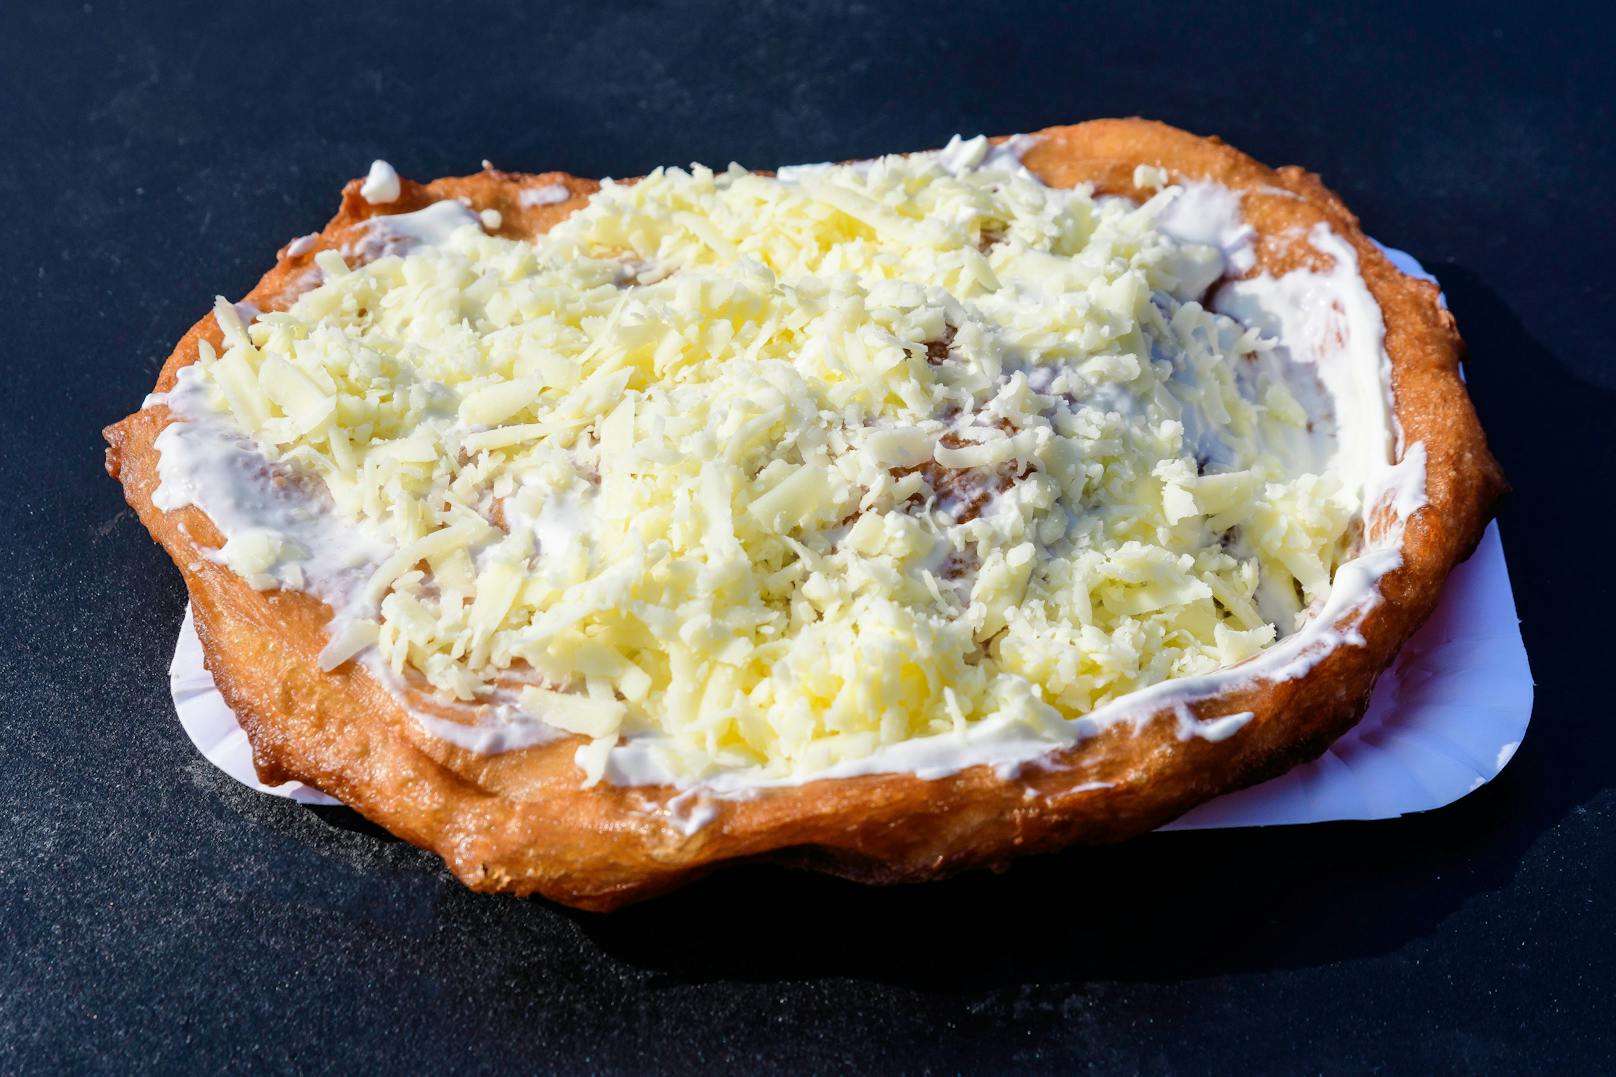 Ungarische Langos mit Knoblauchcreme und Käse &gt;&gt;&gt;&nbsp;<a href="https://www.heute.at/s/ungarische-langos-mit-knoblauchcreme-und-kaese-100177855">HIER GEHT'S zum Rezept!</a>